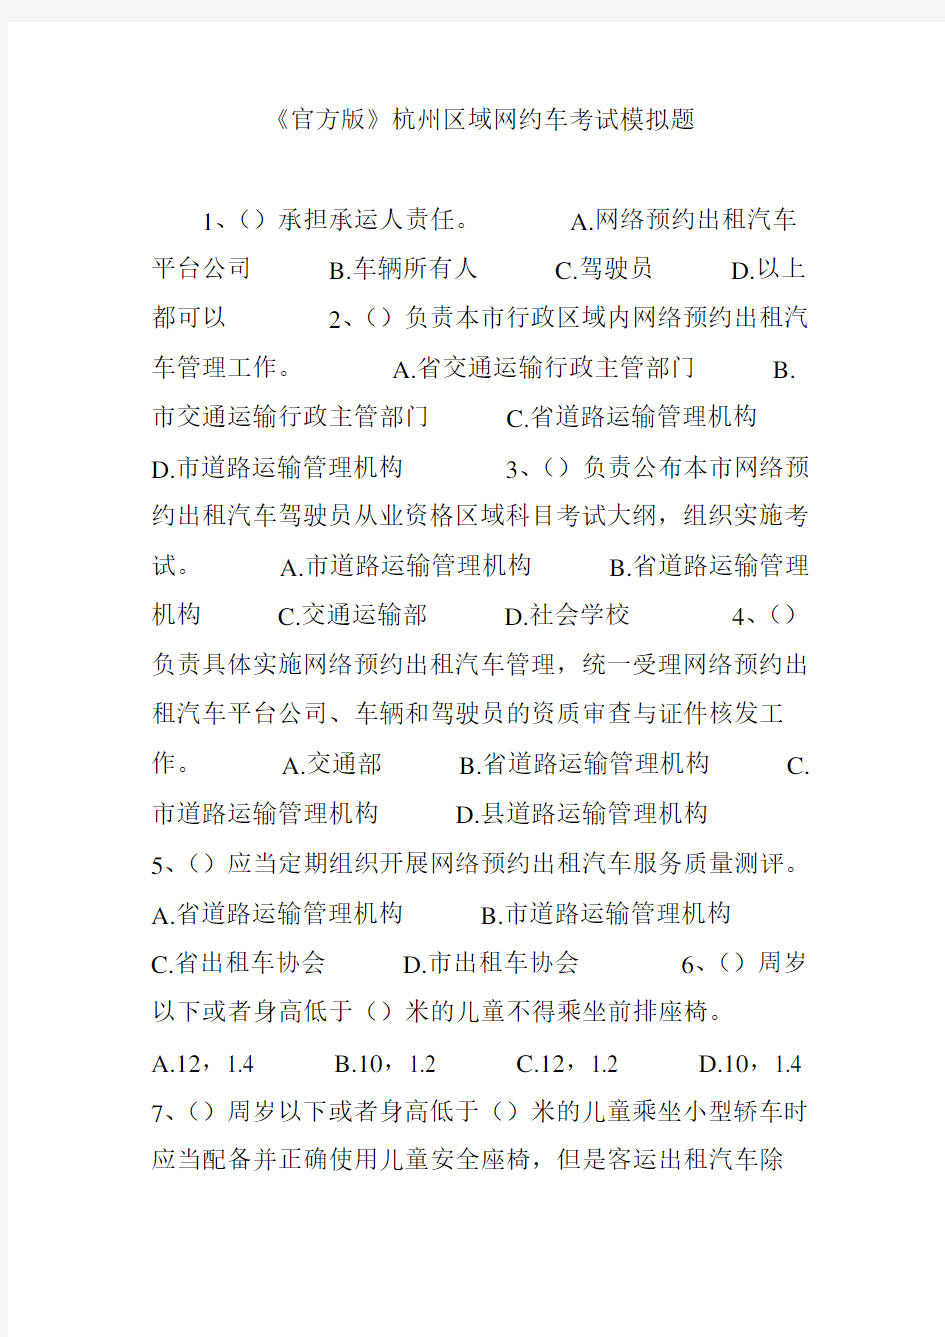 官方版杭州区域网约车考试模拟题